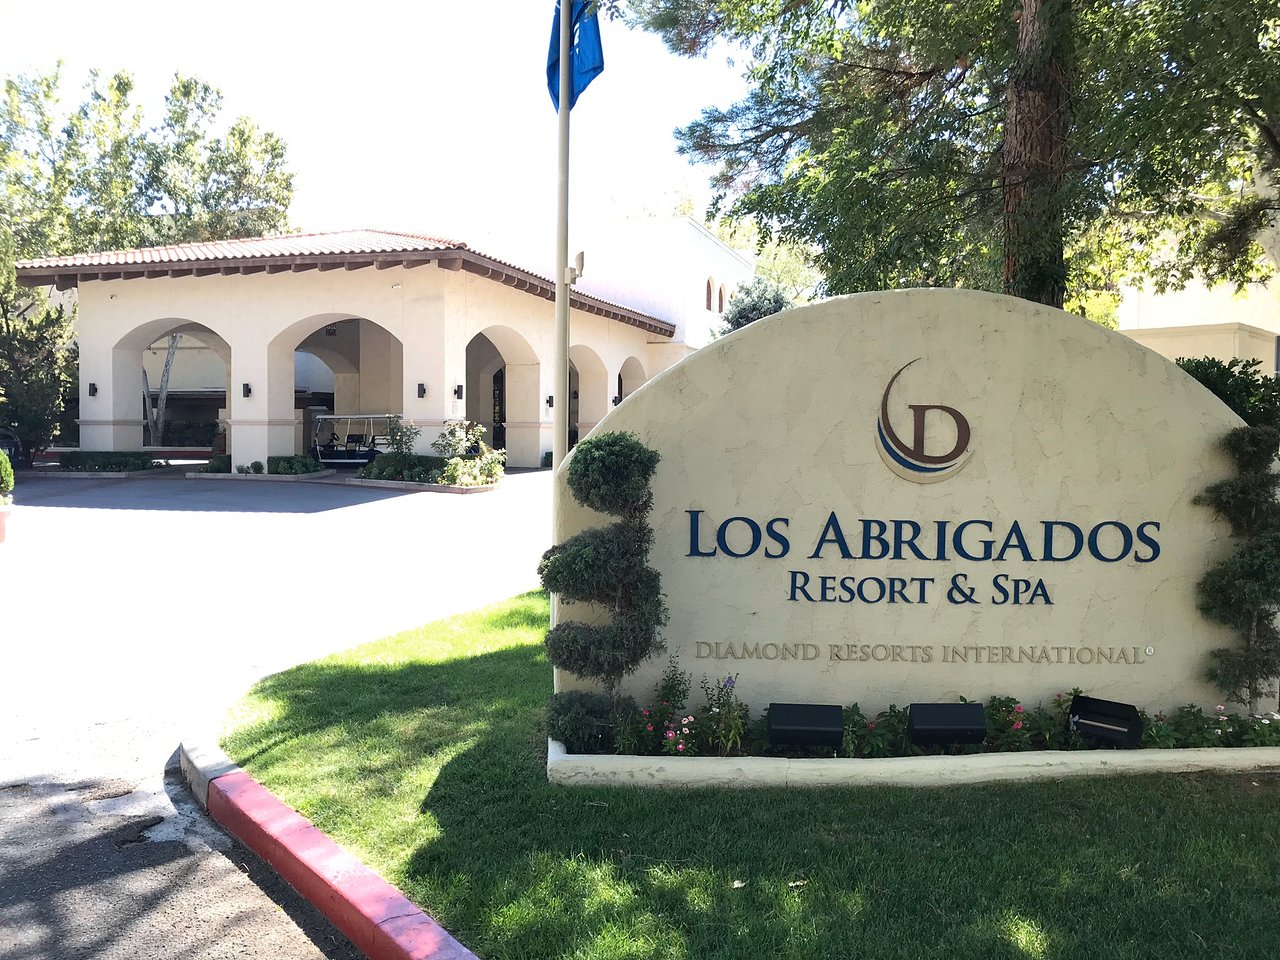 Los Abrigados Resort and Spa Entrance Sign